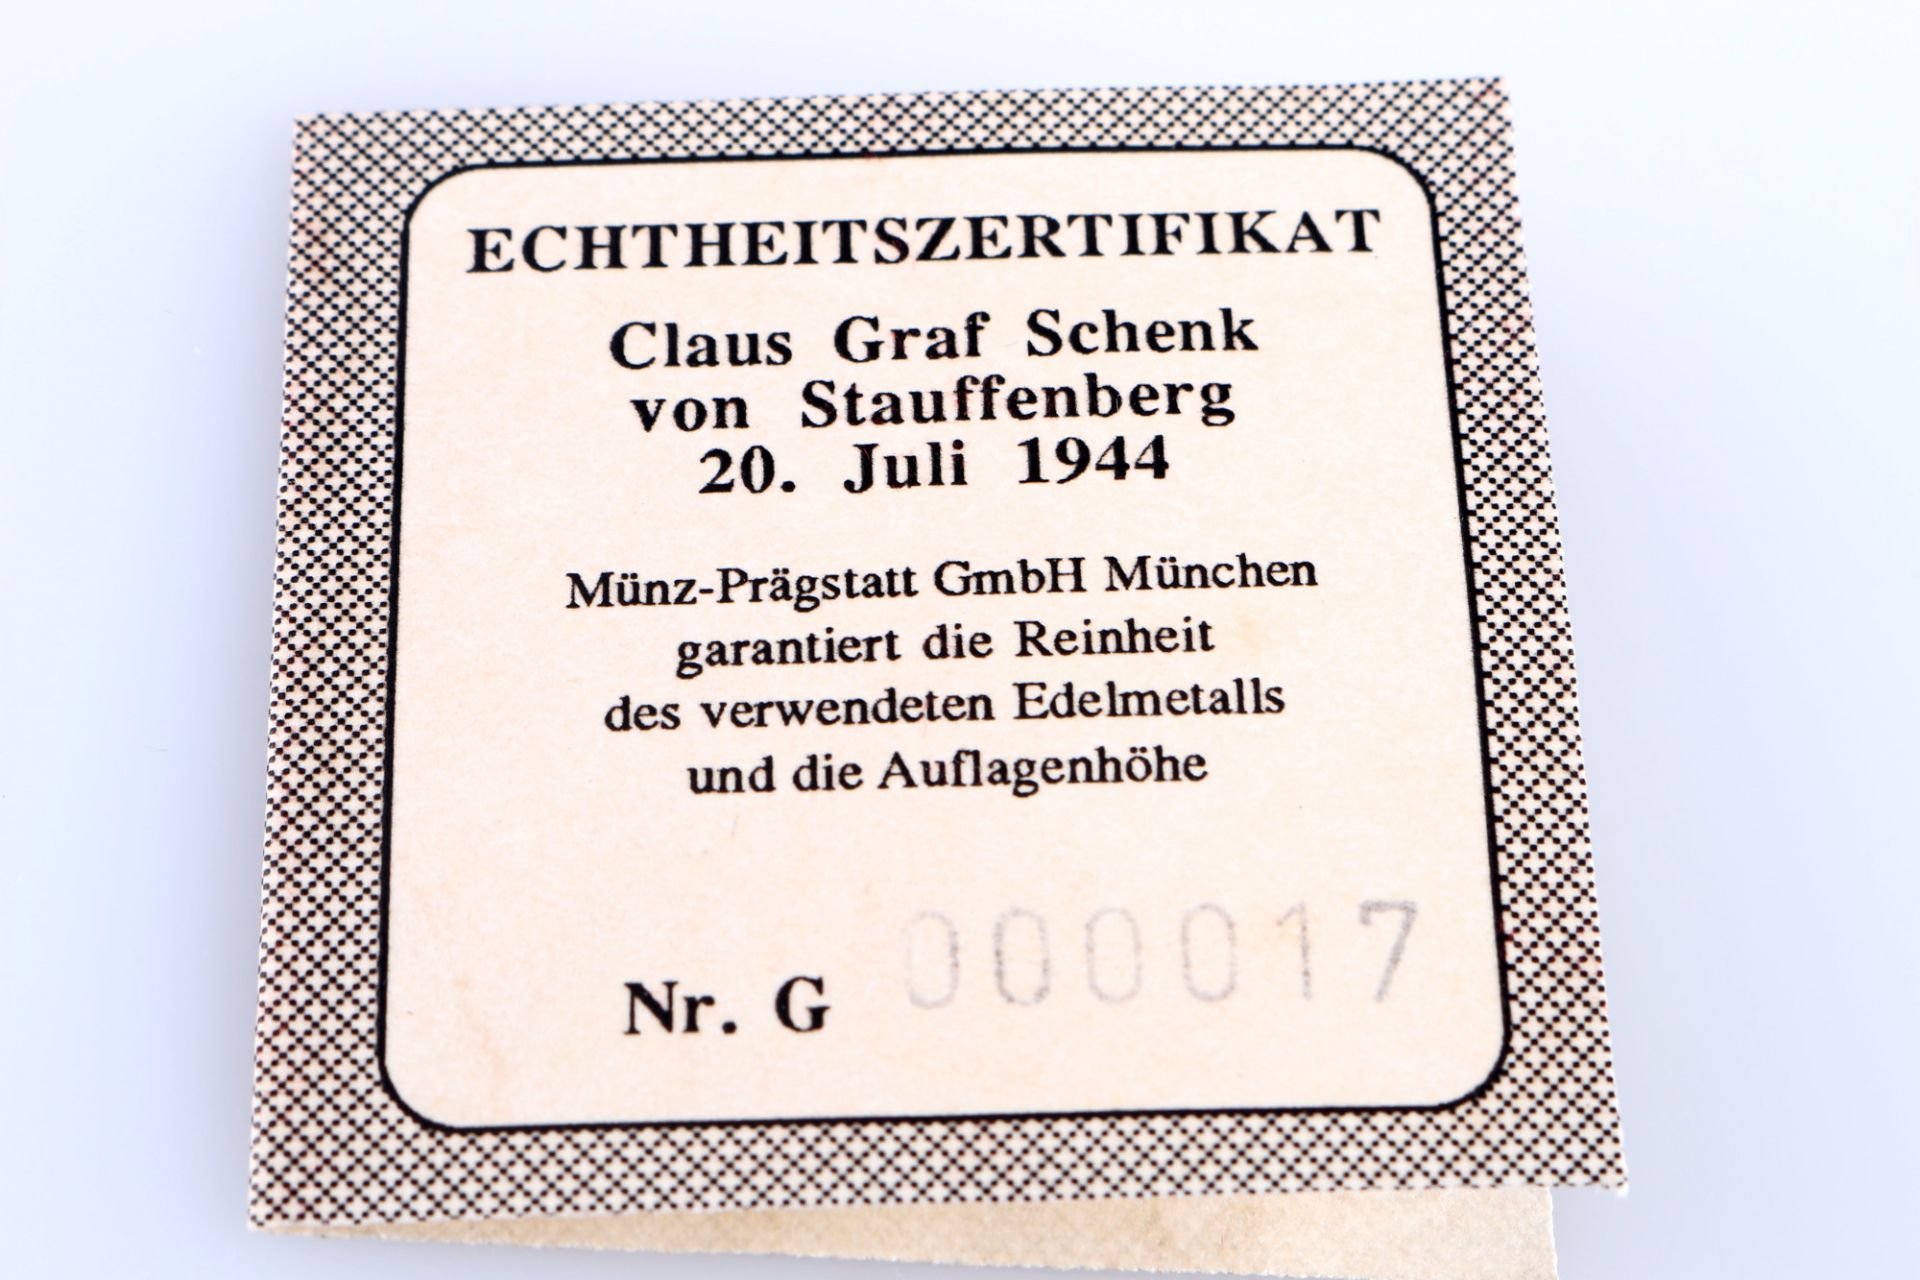 999 gold special coinage Claus Graf Schenk von Stauffenberg, 24K Goldmünze Sonderprägung, - Image 3 of 4